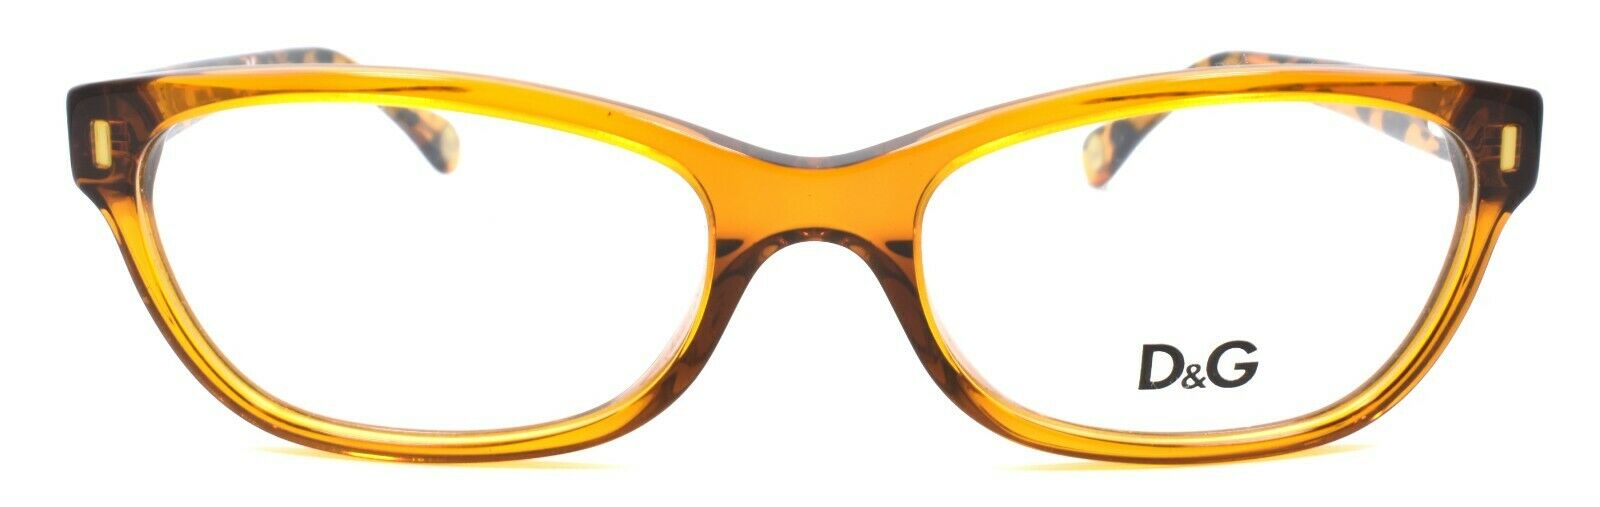 2-Dolce & Gabbana D&G 1205 1837 Women's Eyeglasses Frames 52-17-135 Light Brown-679420409474-IKSpecs